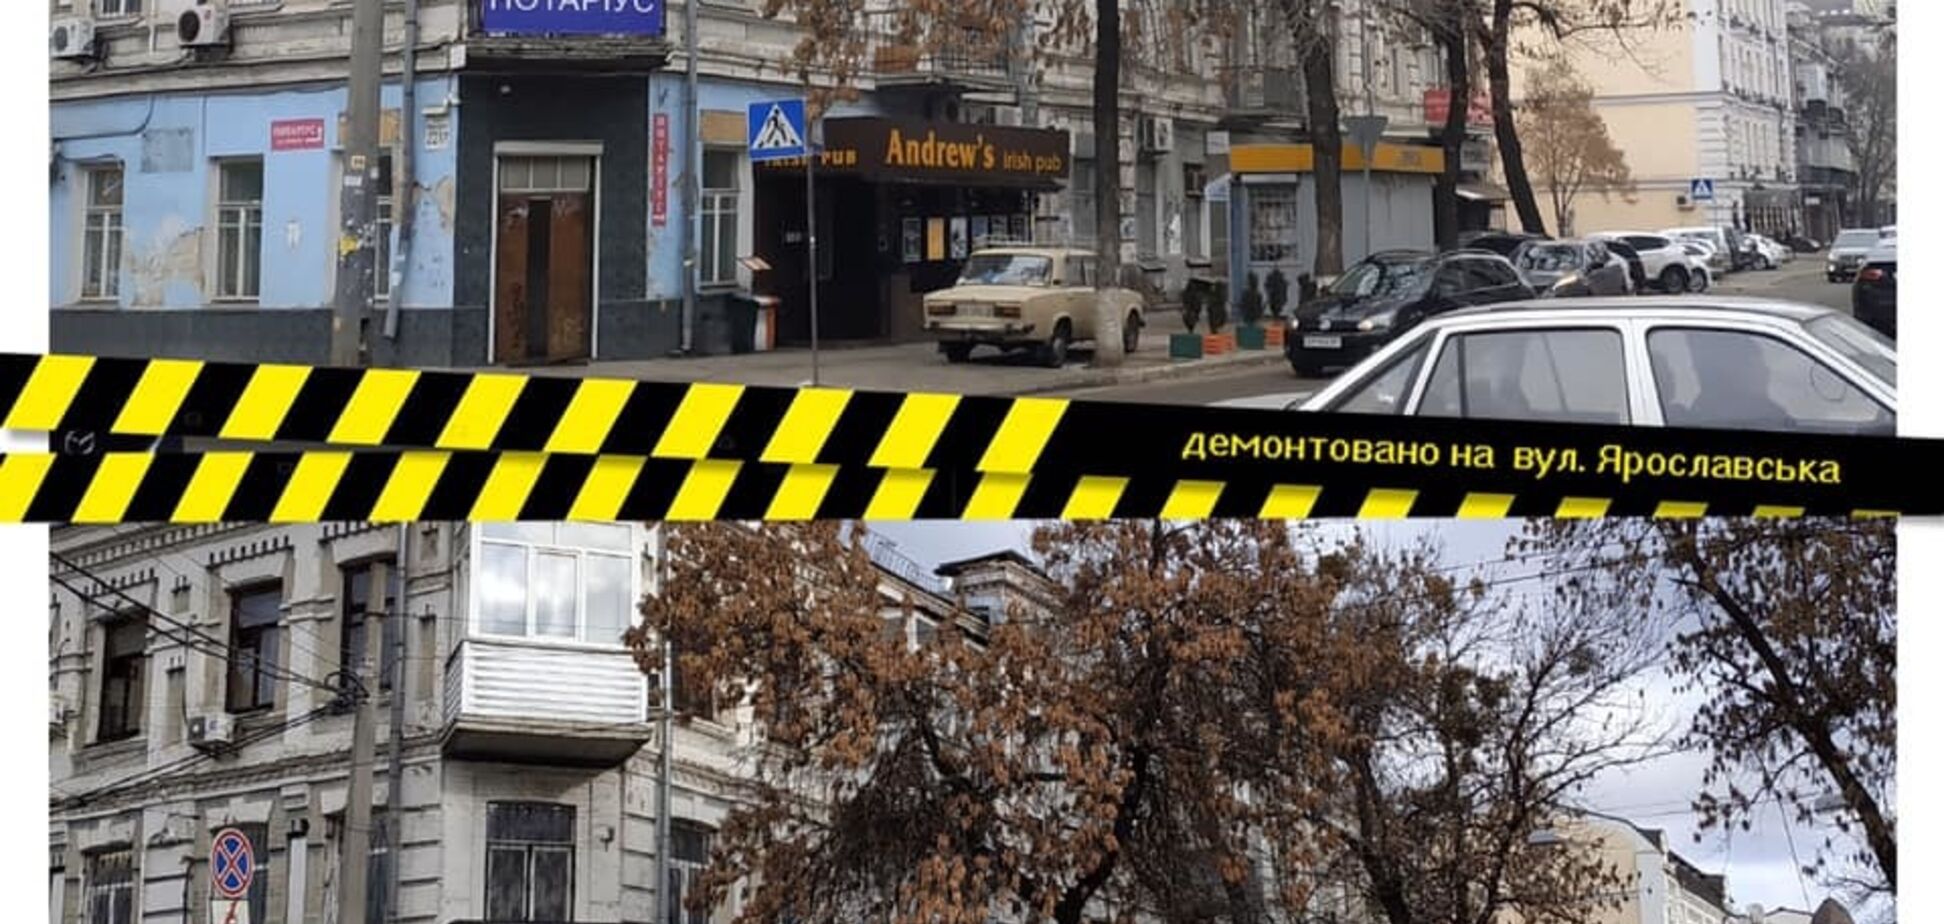 Вернули исторический вид: центр Киева очистили от рекламы. Фото до и после 